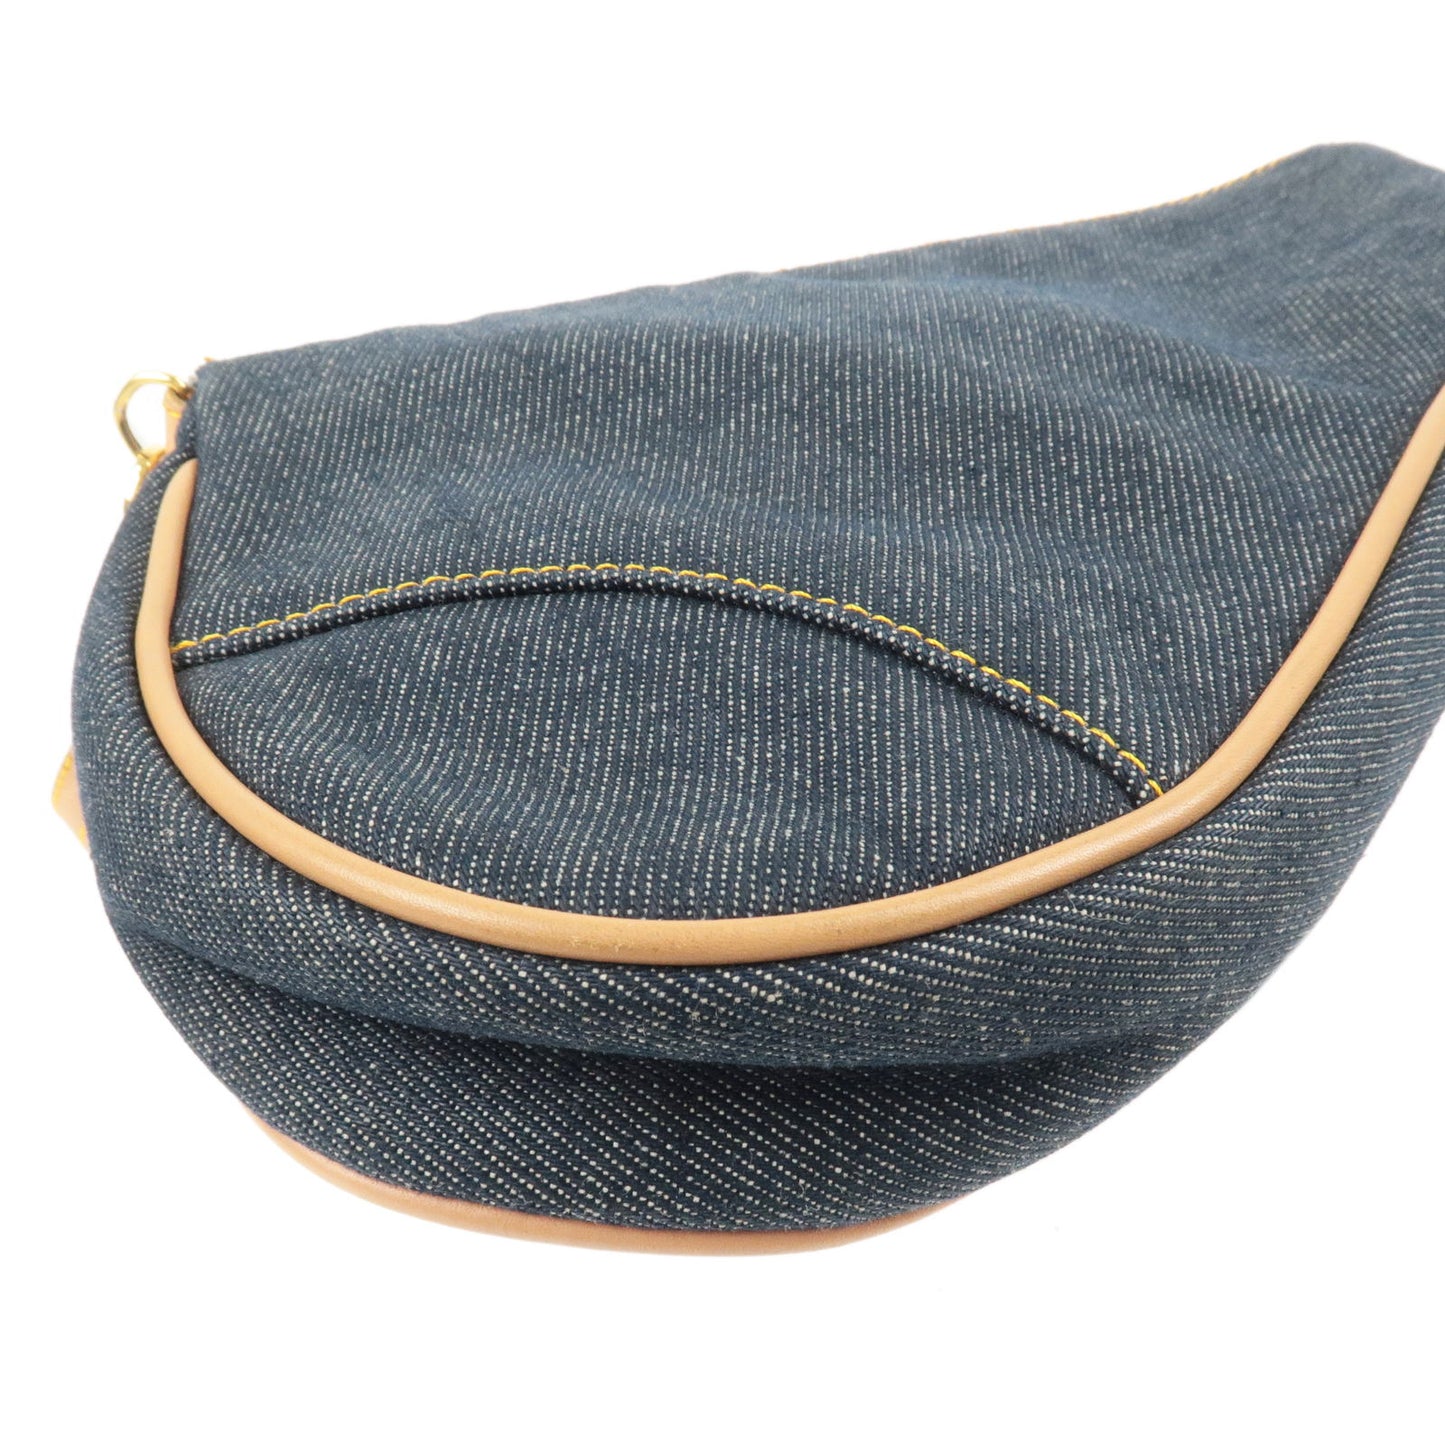 Christian Dior Denim Leather Saddle Bag Shoulder Bag Navy Beige